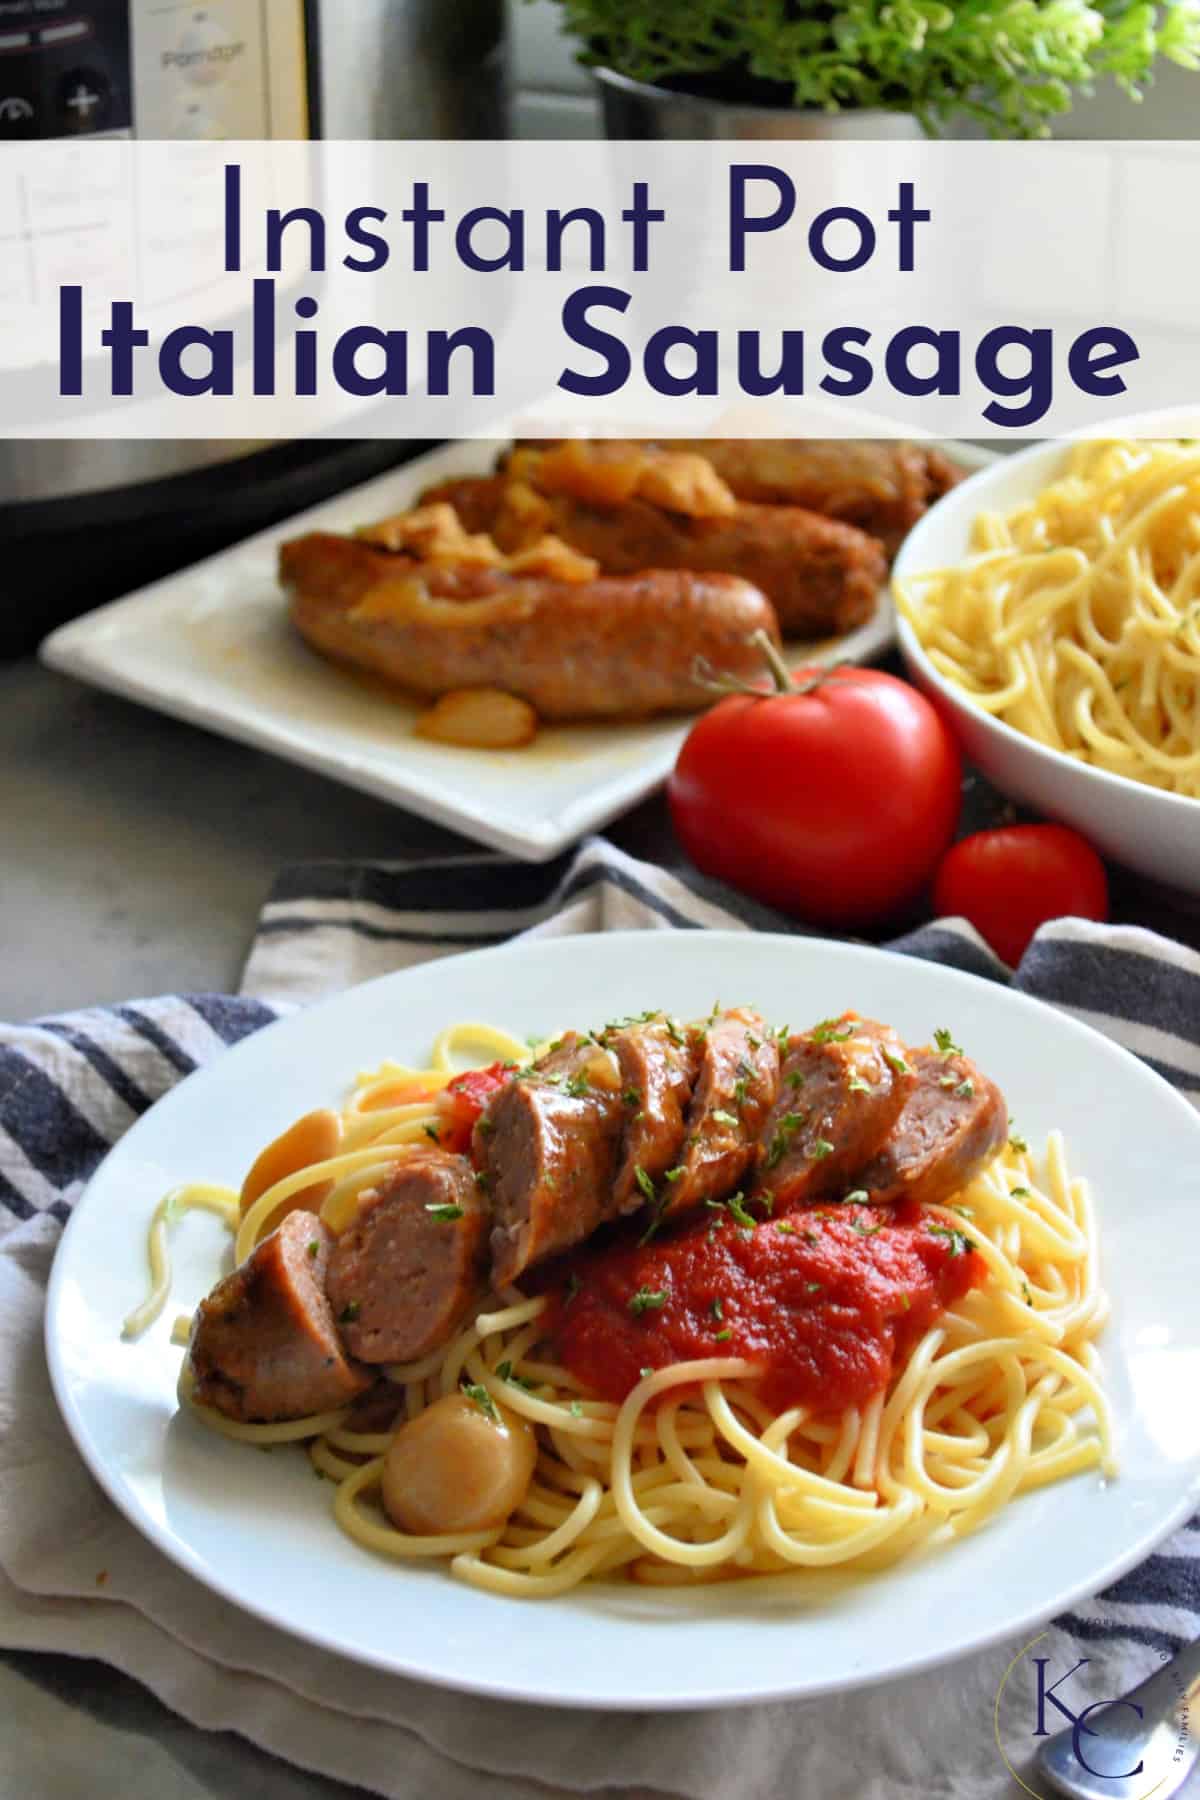  pläterad spaghetti med marinara, örter och skivad italiensk korv med titeltext.